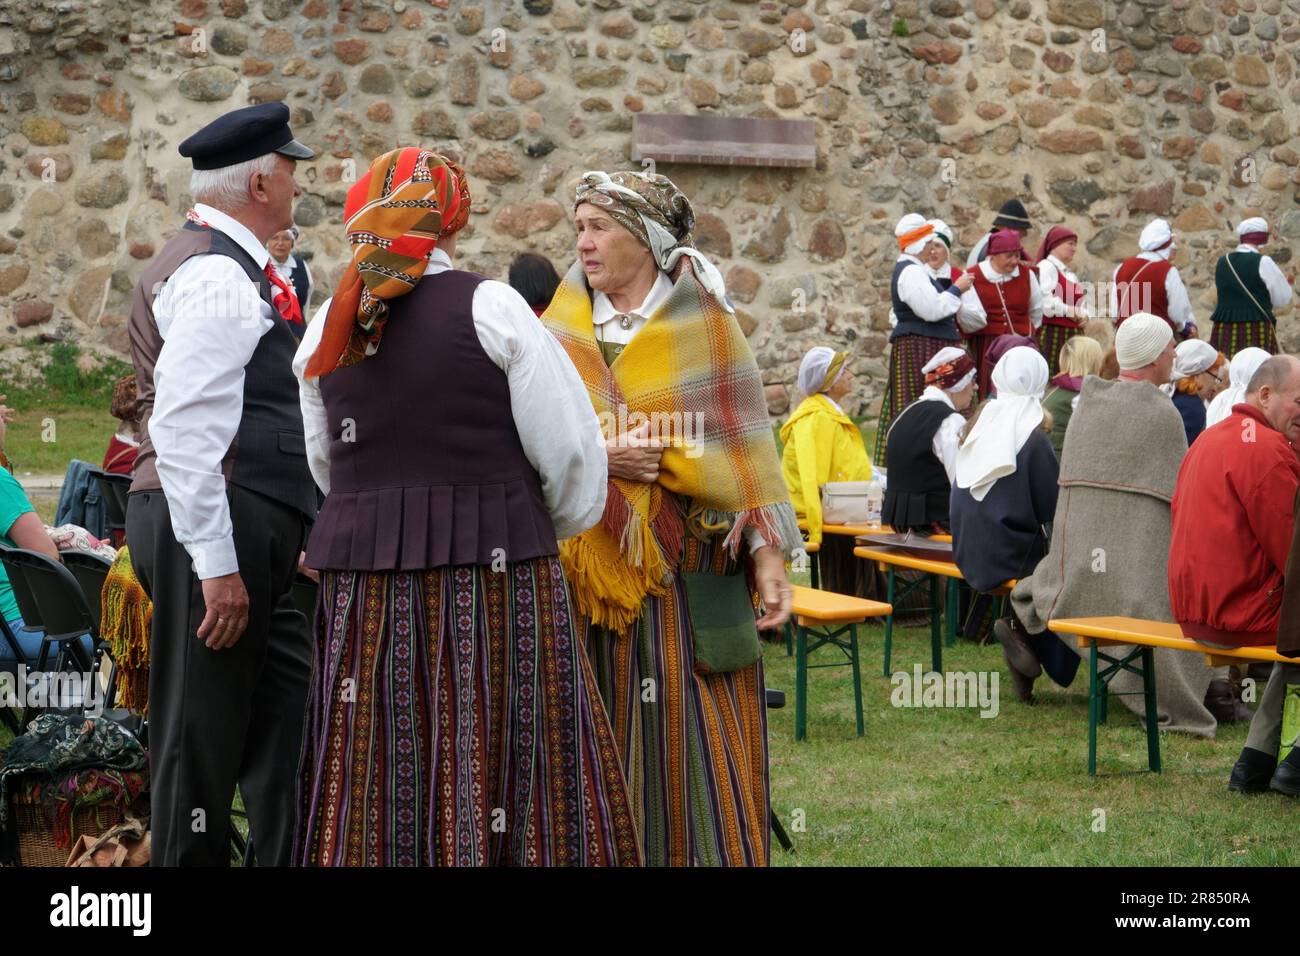 Dobele, Lettonie - 27 mai 2023. Le folklore letton et la culture traditionnelle populaire. Groupe d'aînés en costumes nationaux lettons dans une fête au cultu Banque D'Images